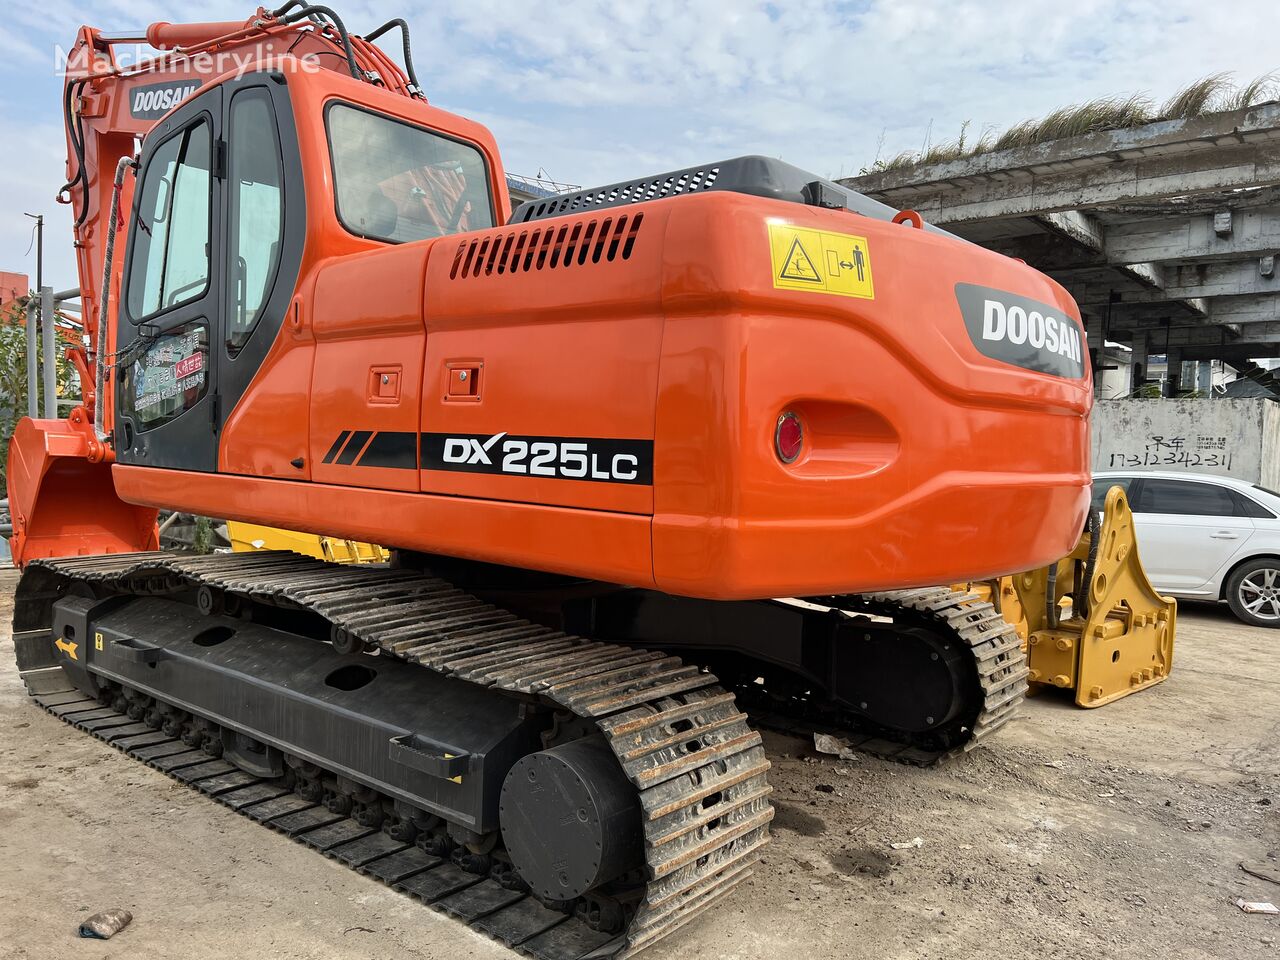 Doosan DX225 tracked excavator